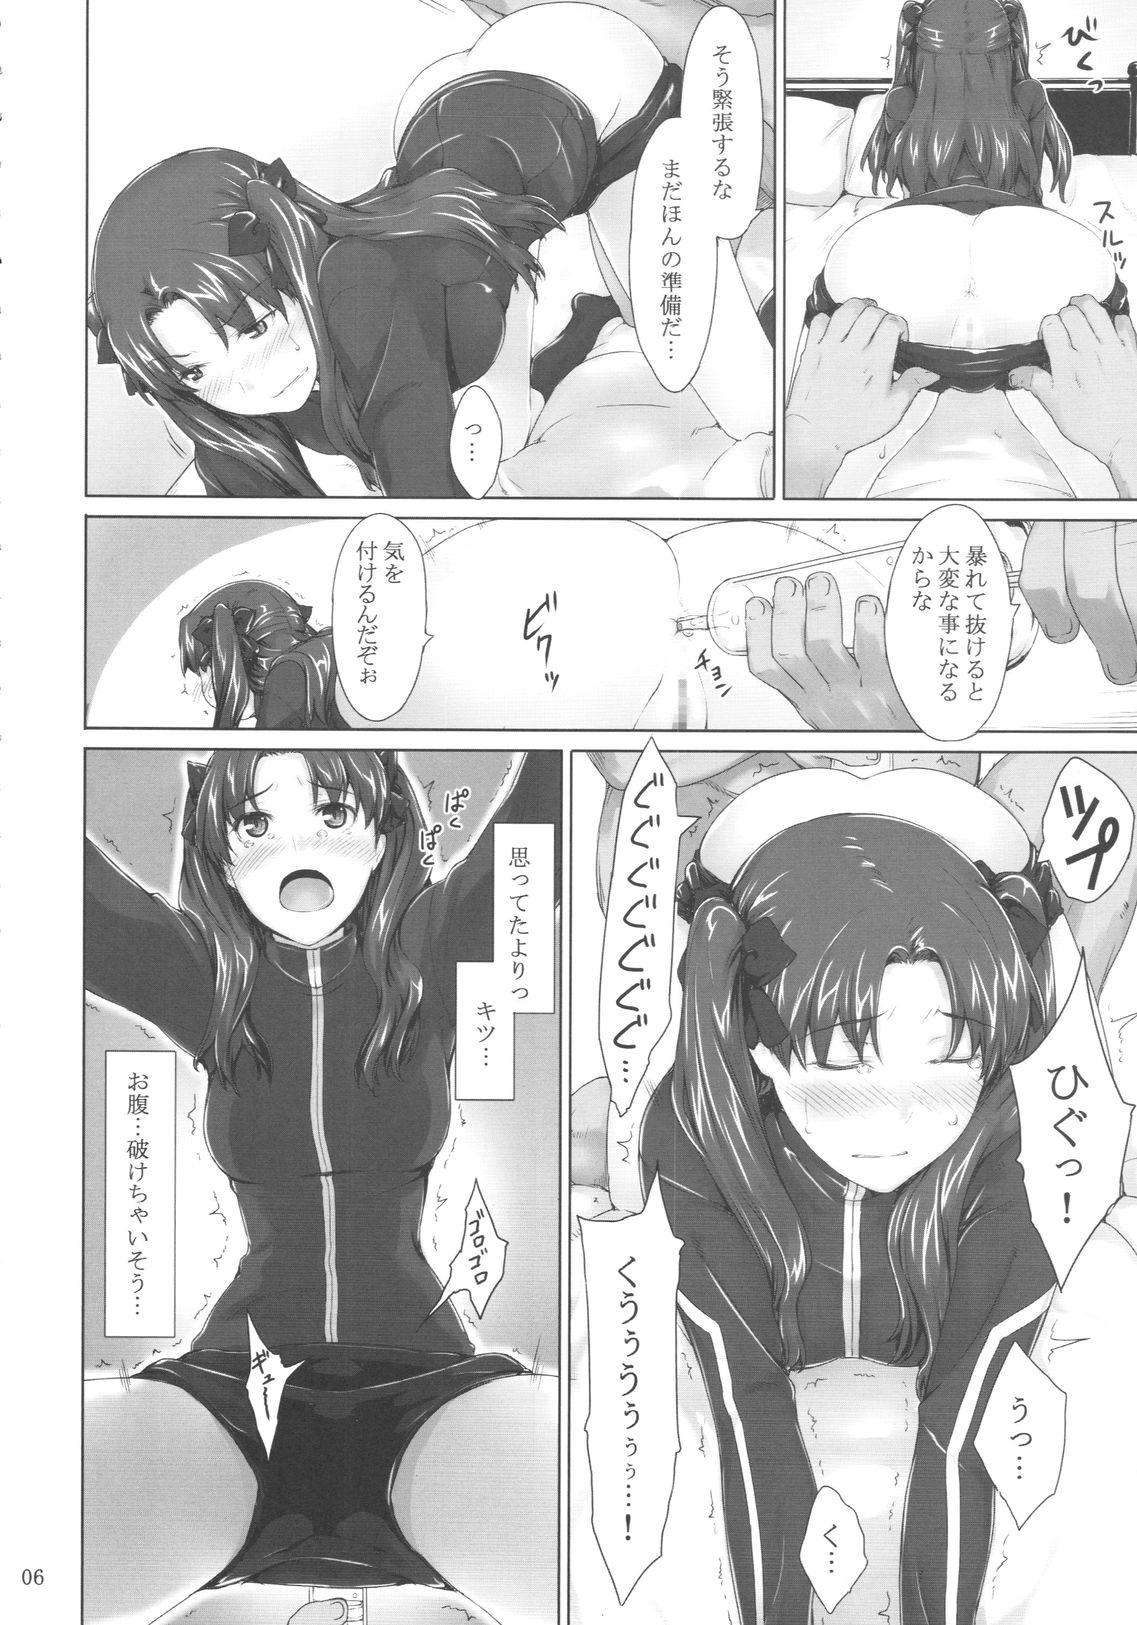 Gapes Gaping Asshole Tohsaka-ke no Kakei Jijou 5 - Fate stay night Muscle - Page 5